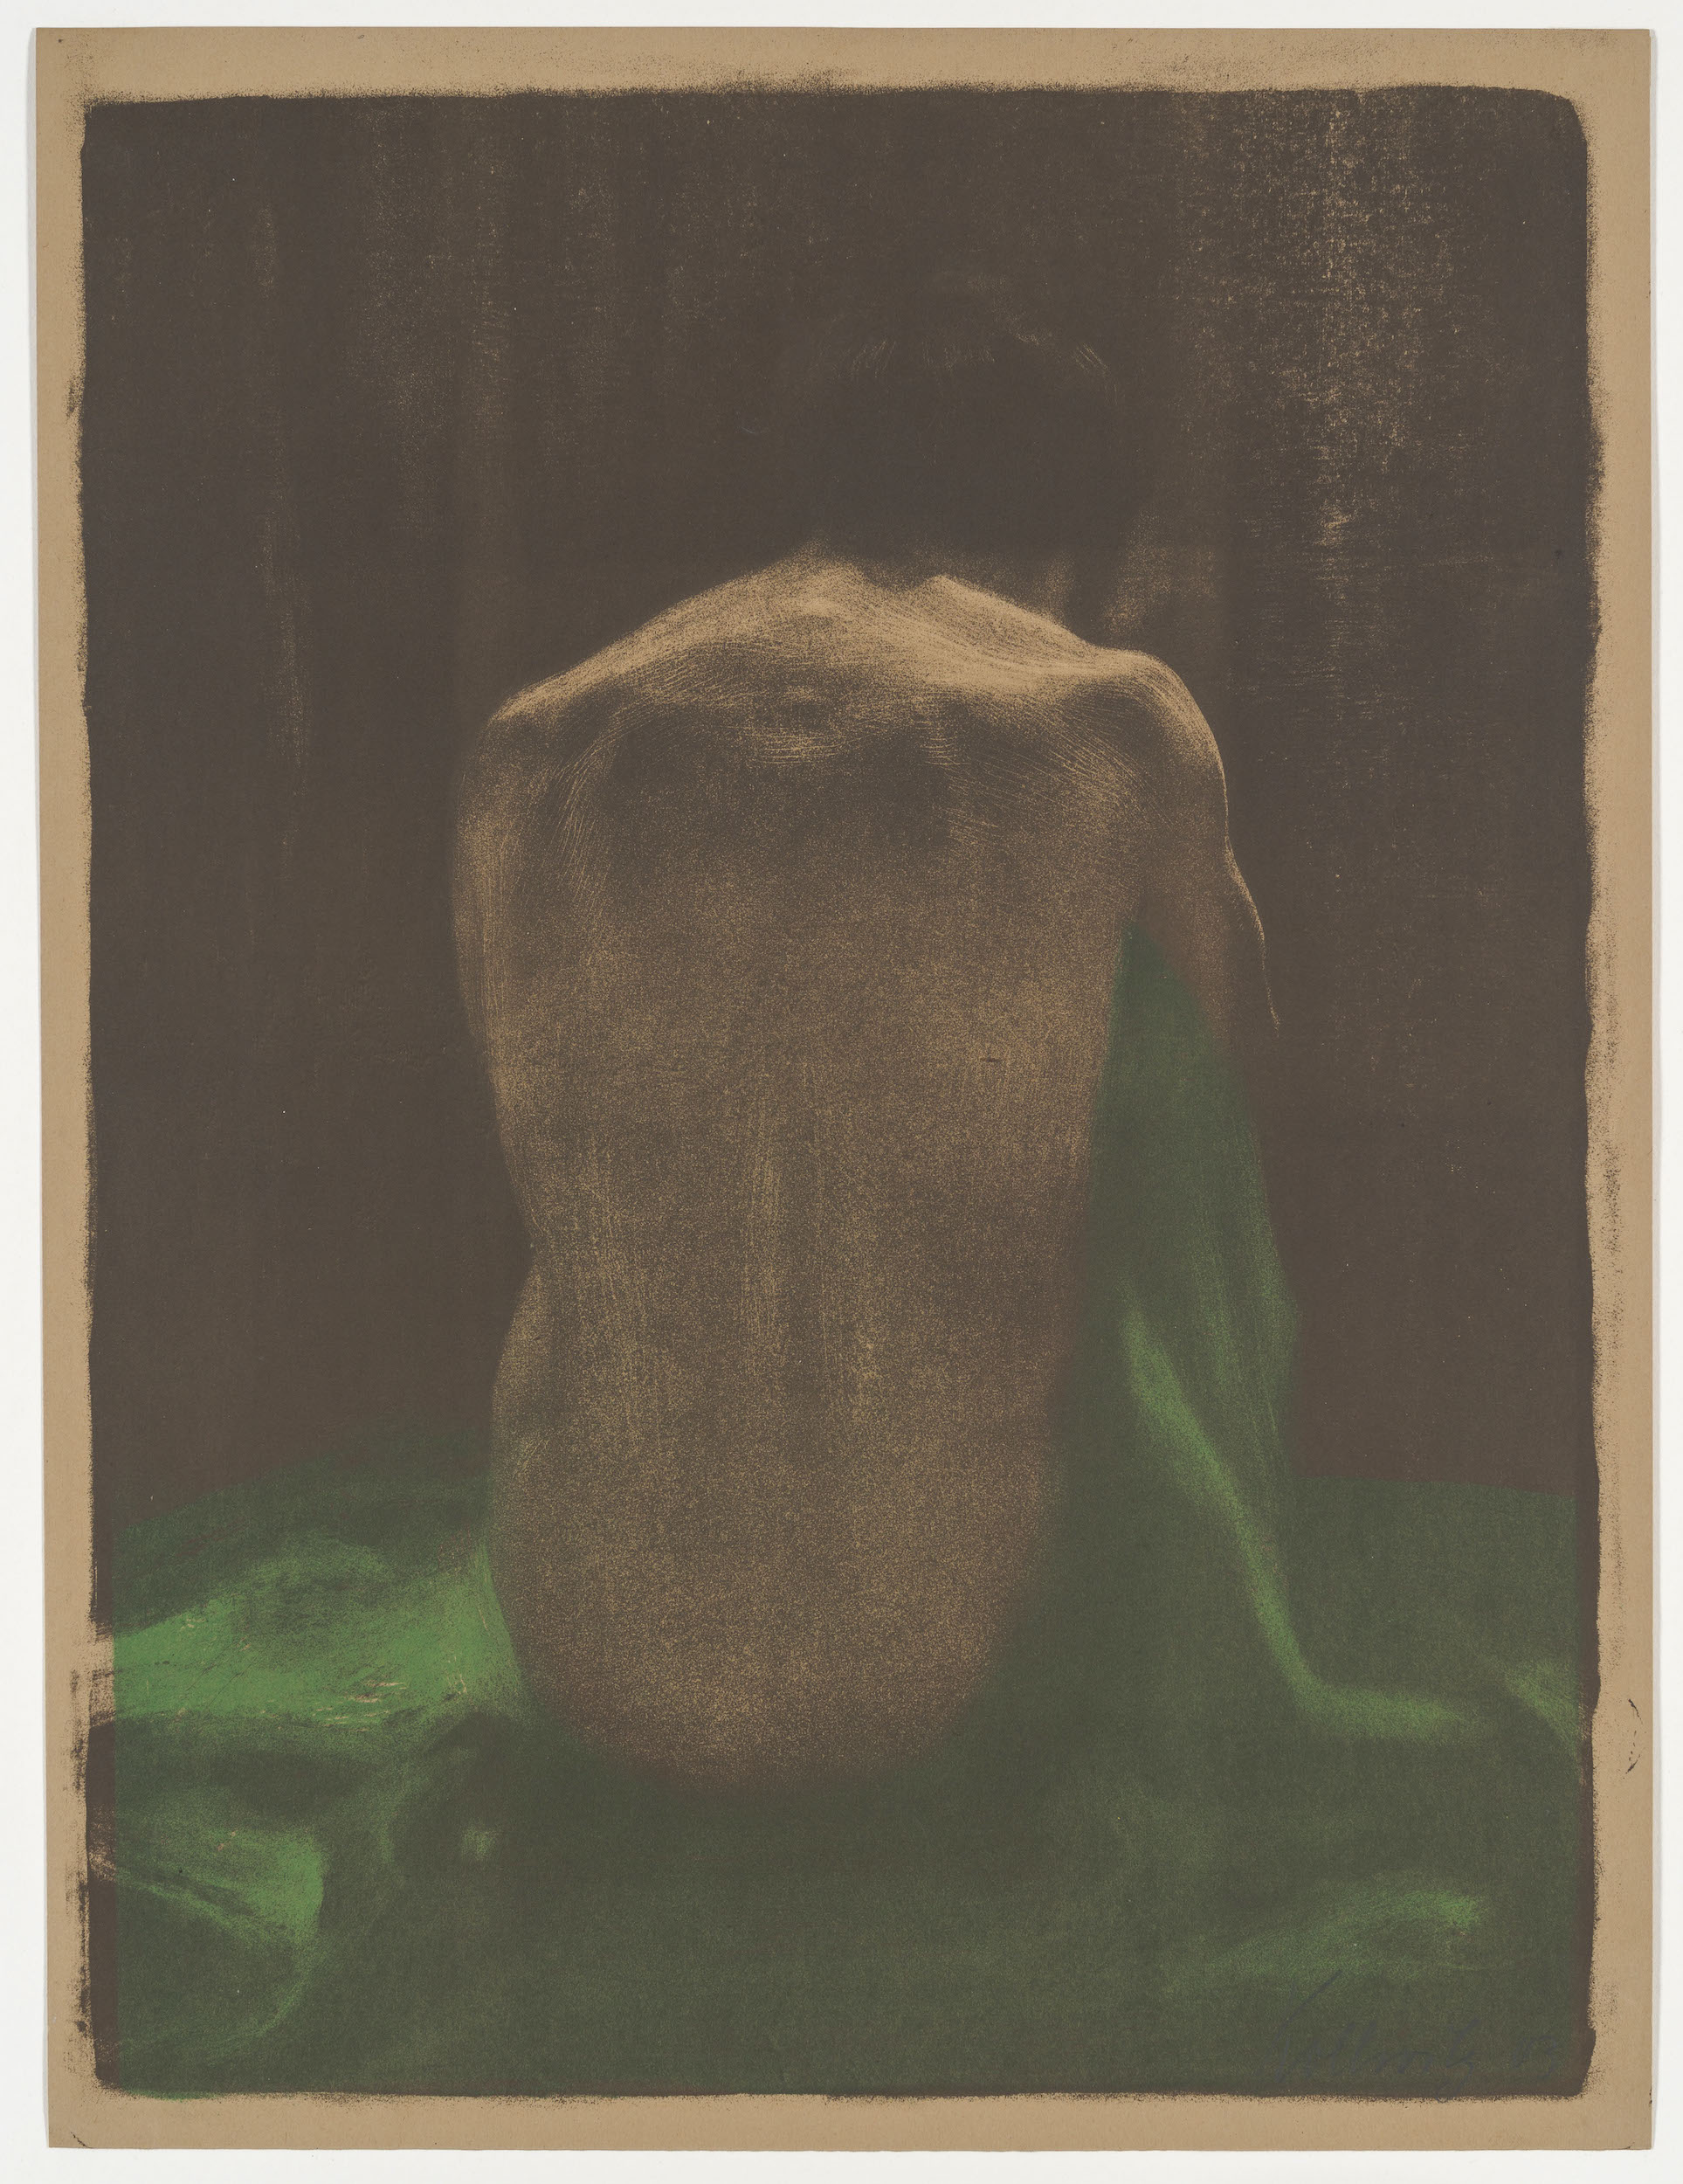 Nudo femminile con scialle verde by Käthe Kollwitz - 1903 - 58 x 44 cm 